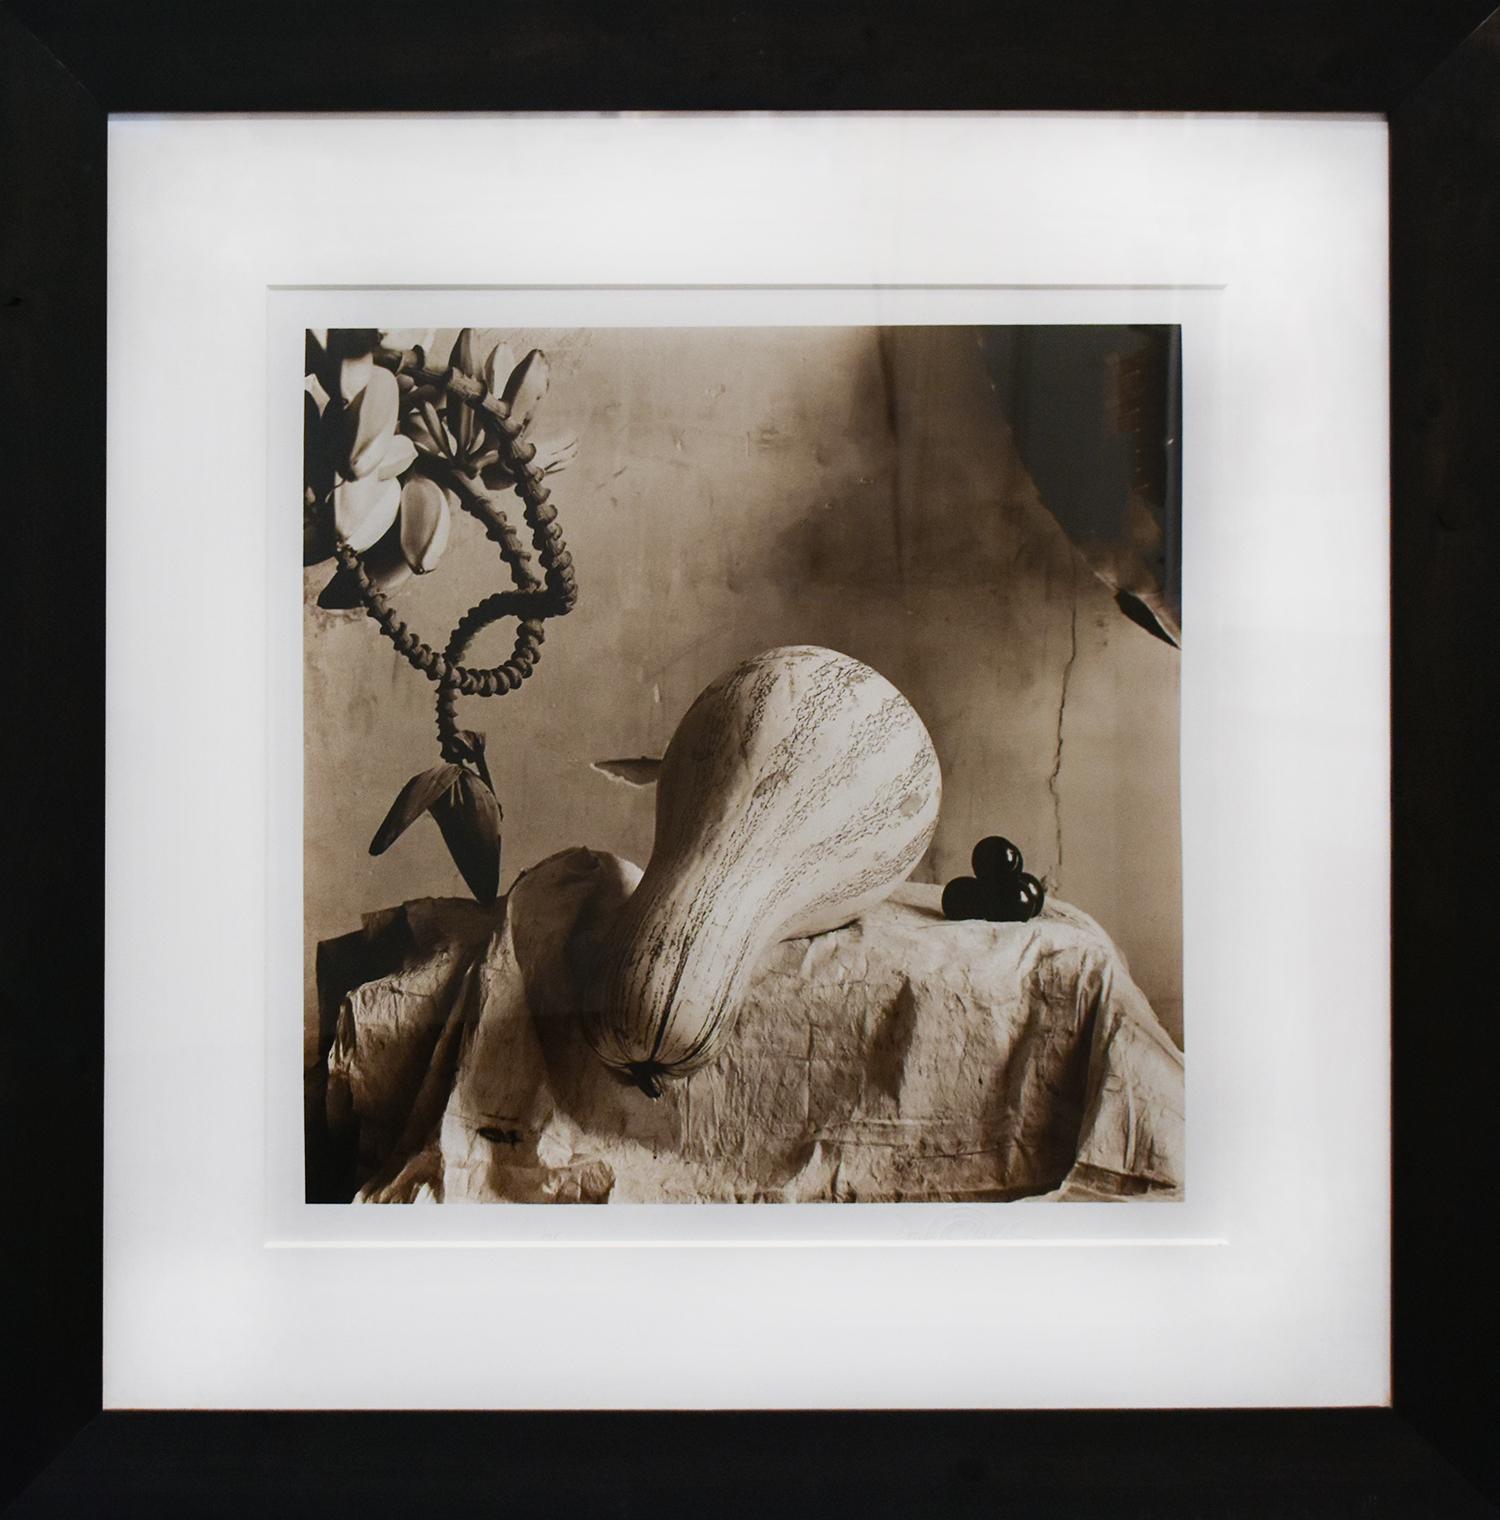 Stillleben mit Cushaw (Sepiafarbene Stilllebenfotografie eines Gemüses, gerahmt)  – Photograph von David Halliday